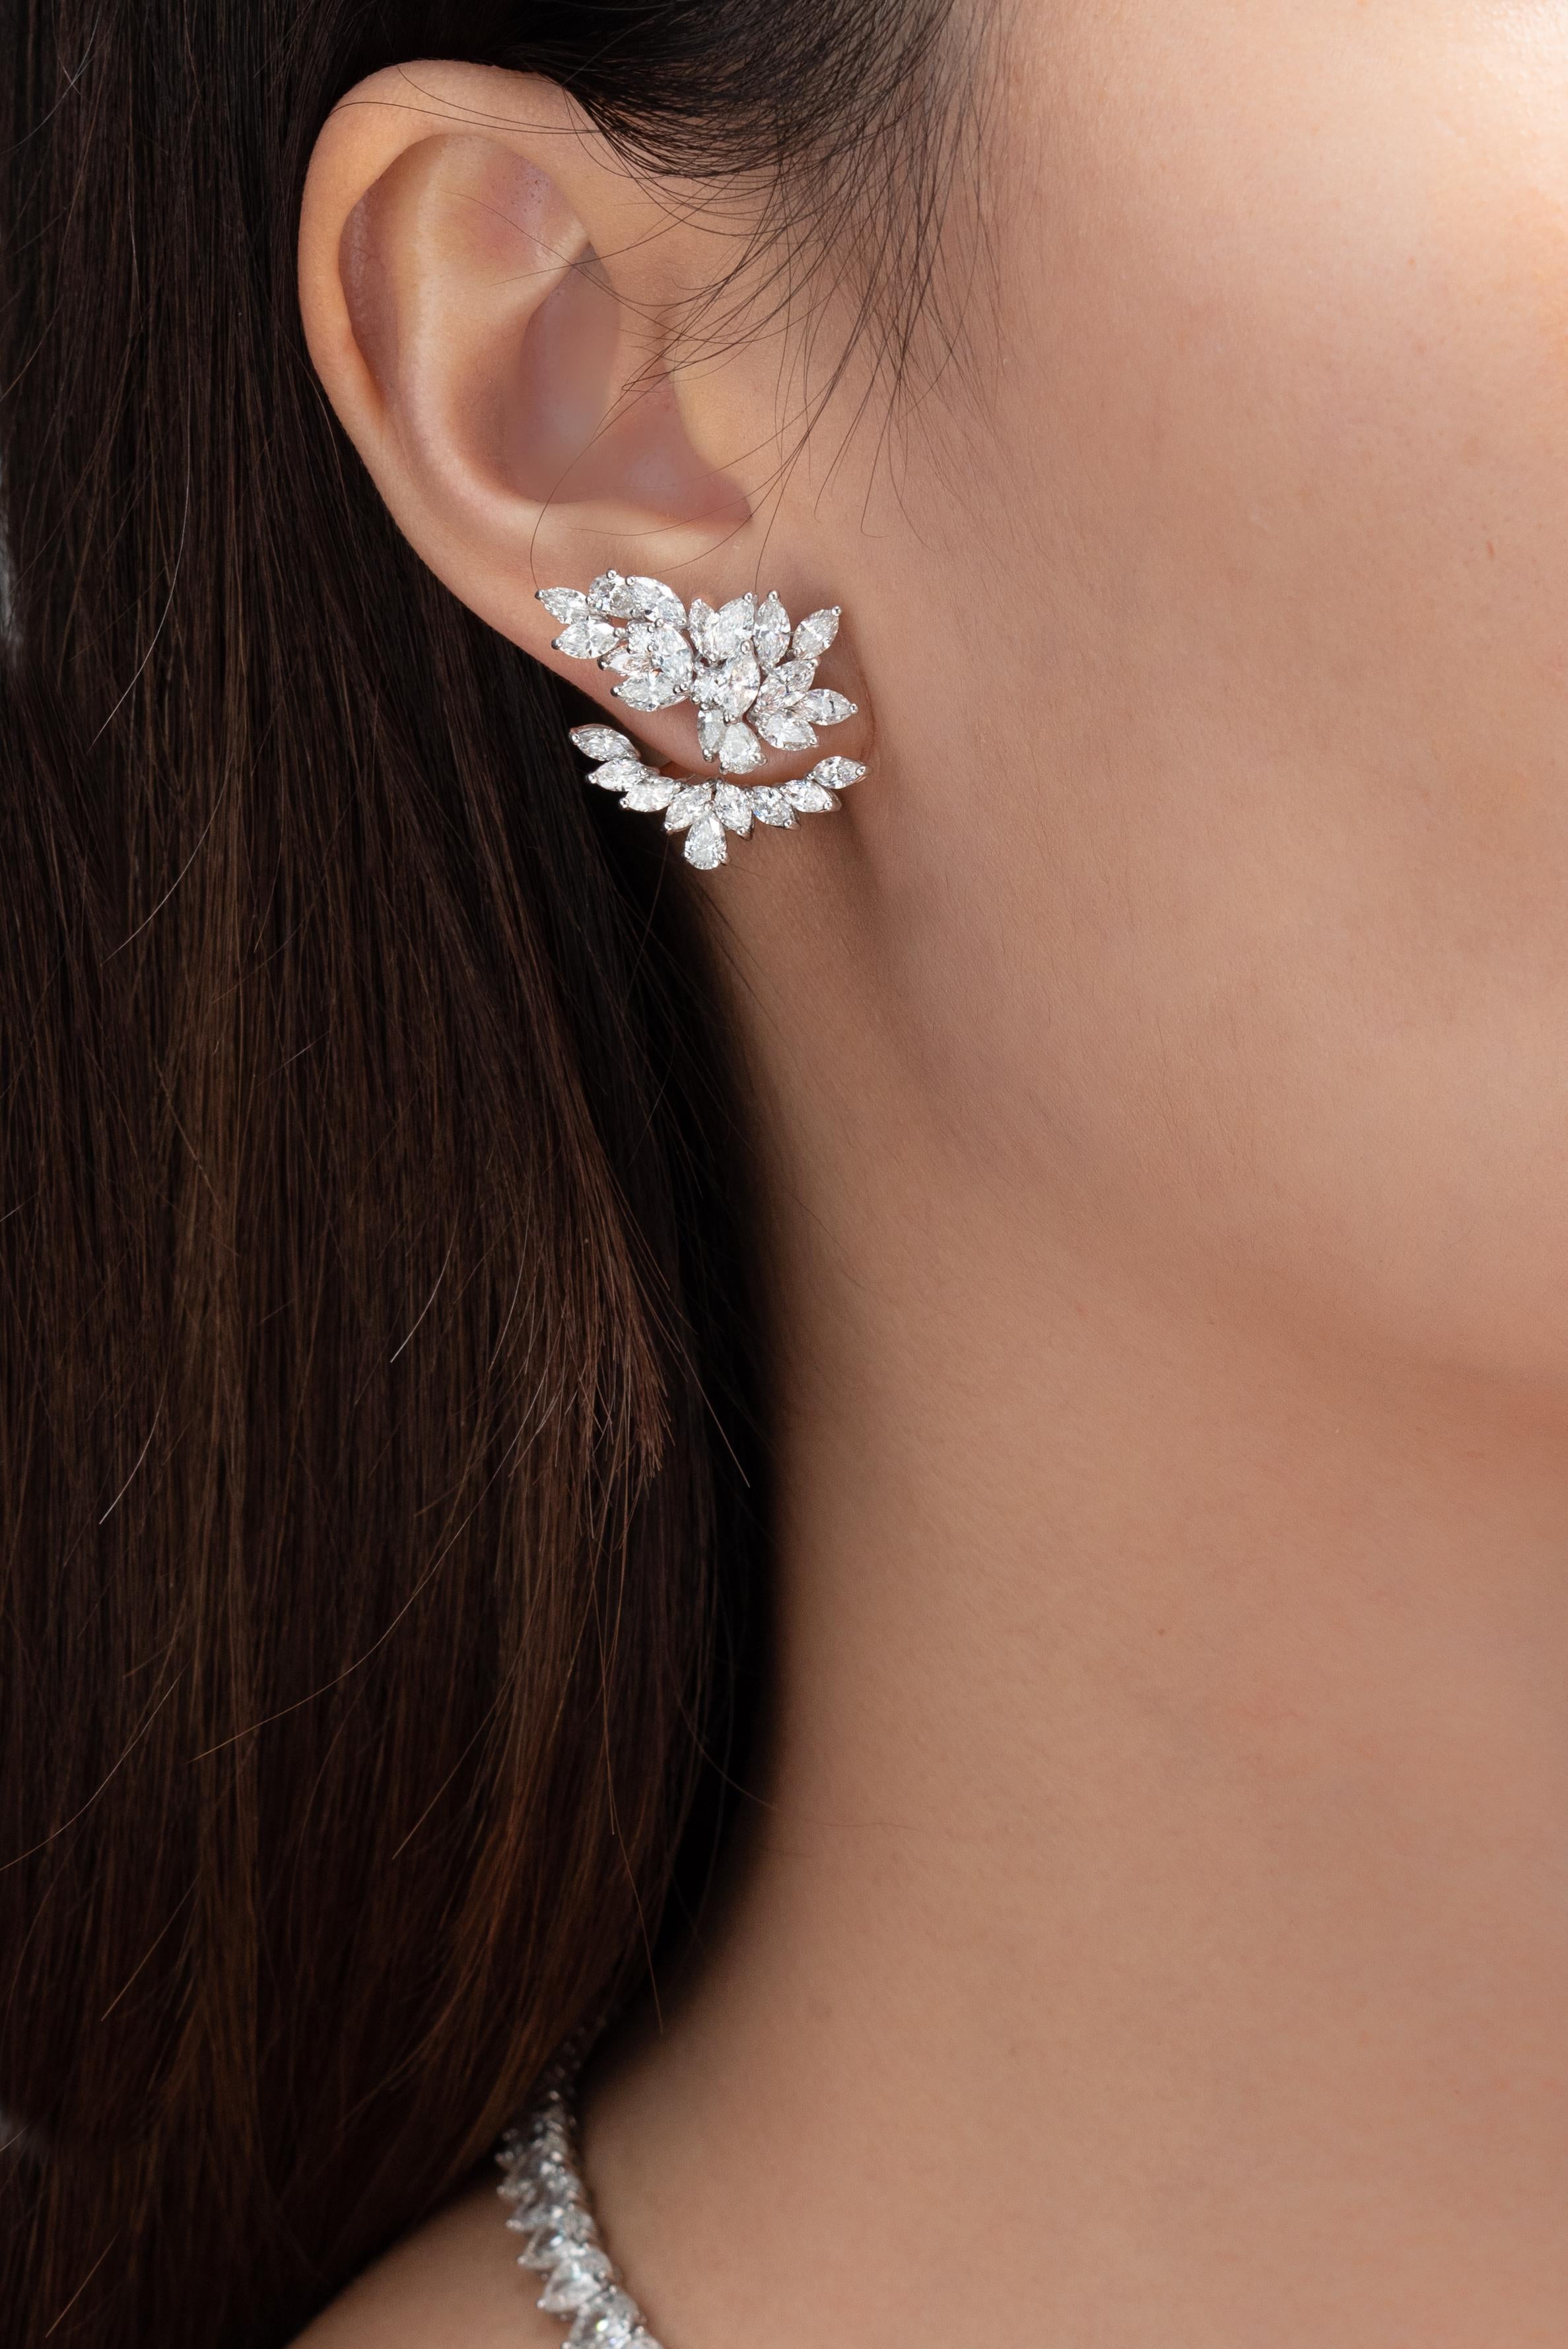 Diese einzigartigen Diamantohrringe von Vihari Fine Jewels bieten den Kunden den zusätzlichen Vorteil der Vielseitigkeit, da sie auf drei verschiedene Arten getragen werden können: (1) wie auf dem Bild mit dem Ohrring und der Ohrmuschel, (2) einfach